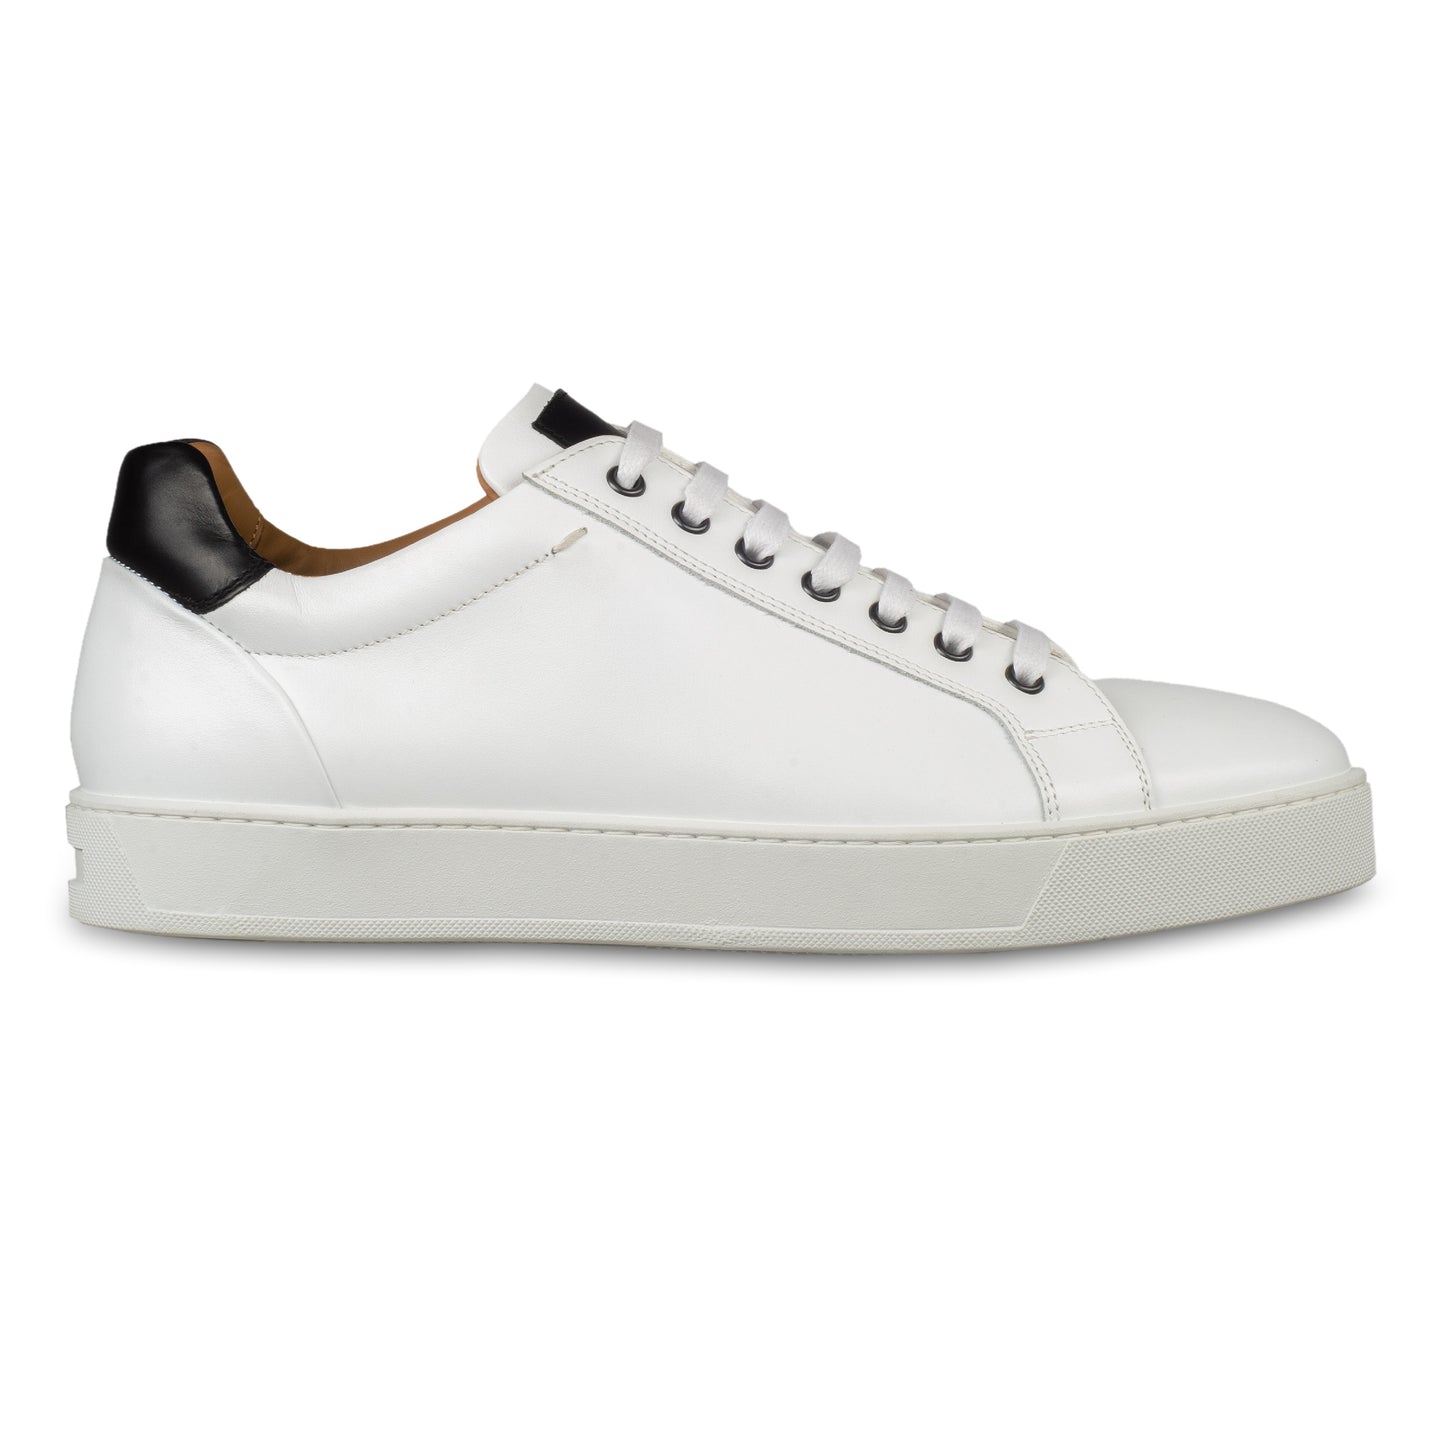 Triverflight – Italienische Herren-Sneaker in weiß mit schwarzer Ferse. Aus Kalbsleder handgefertigt. Seitliche Ansicht der Außenseite rechter Schuh.